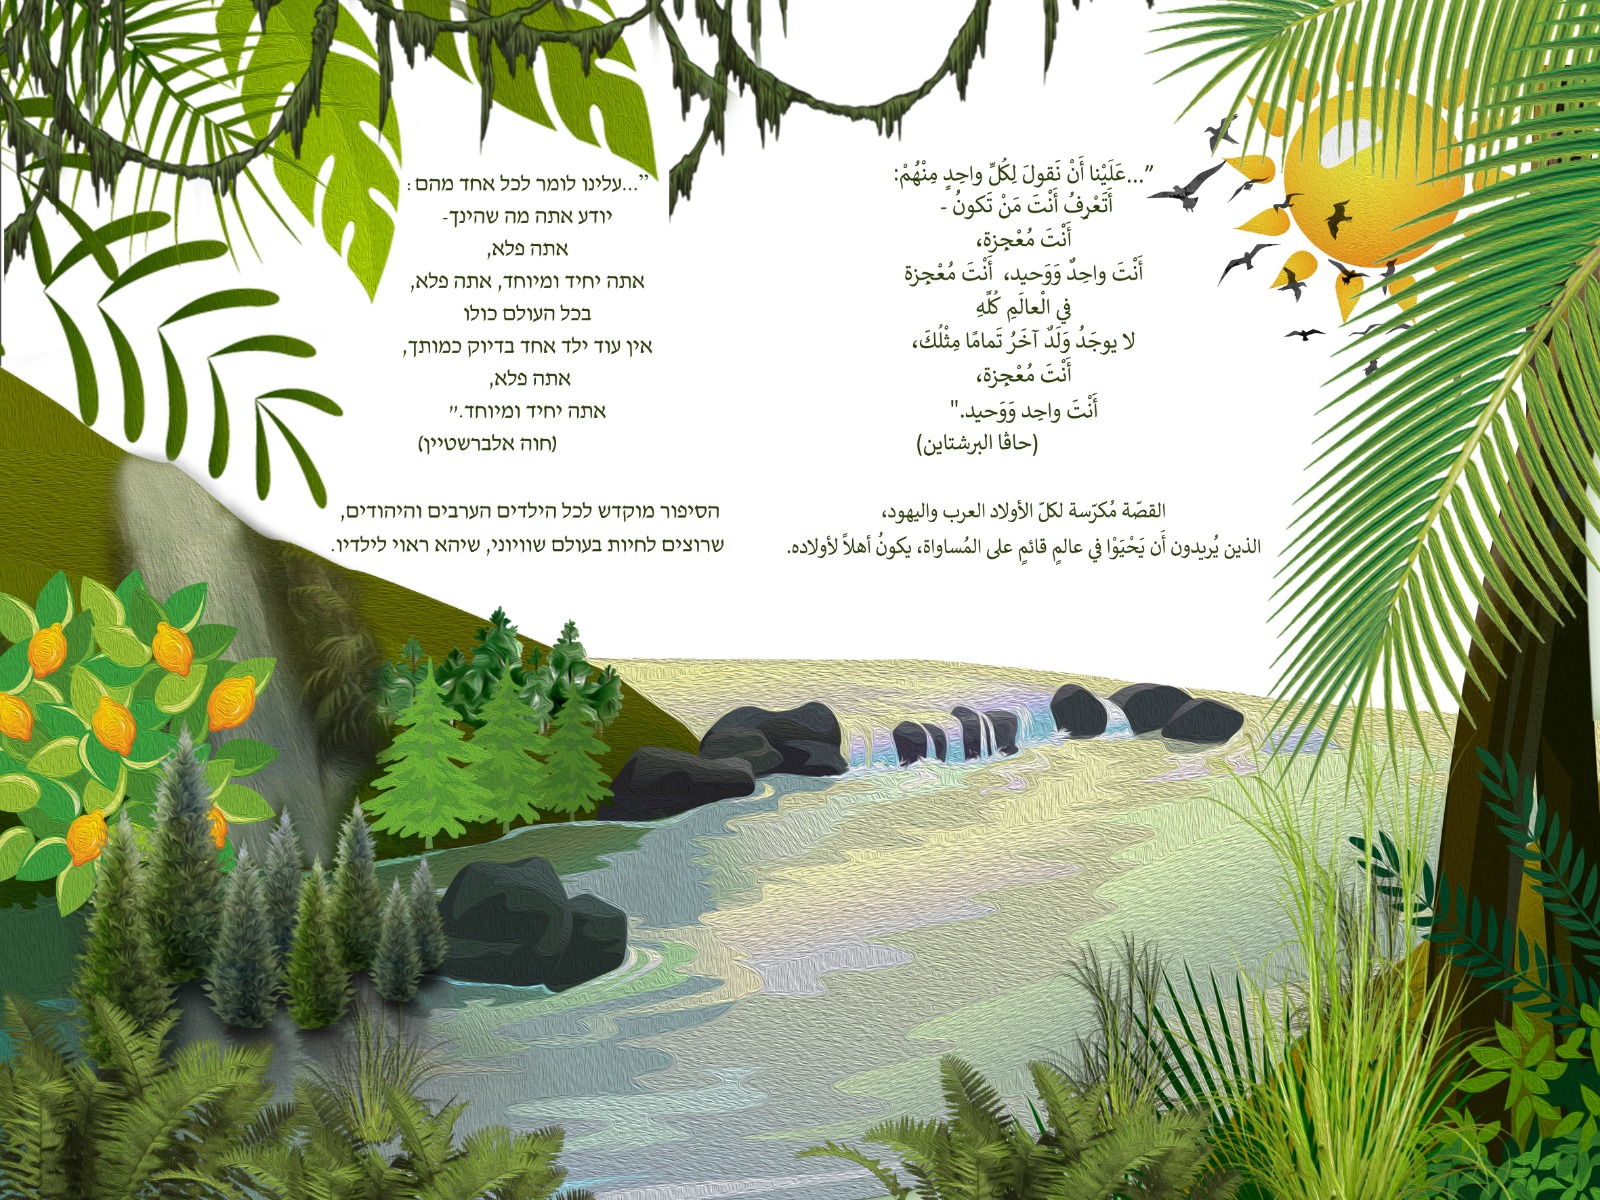 اصدار قصة للأطفال بعنوان ألوان في الغابة باللغتين العربية والعبرية